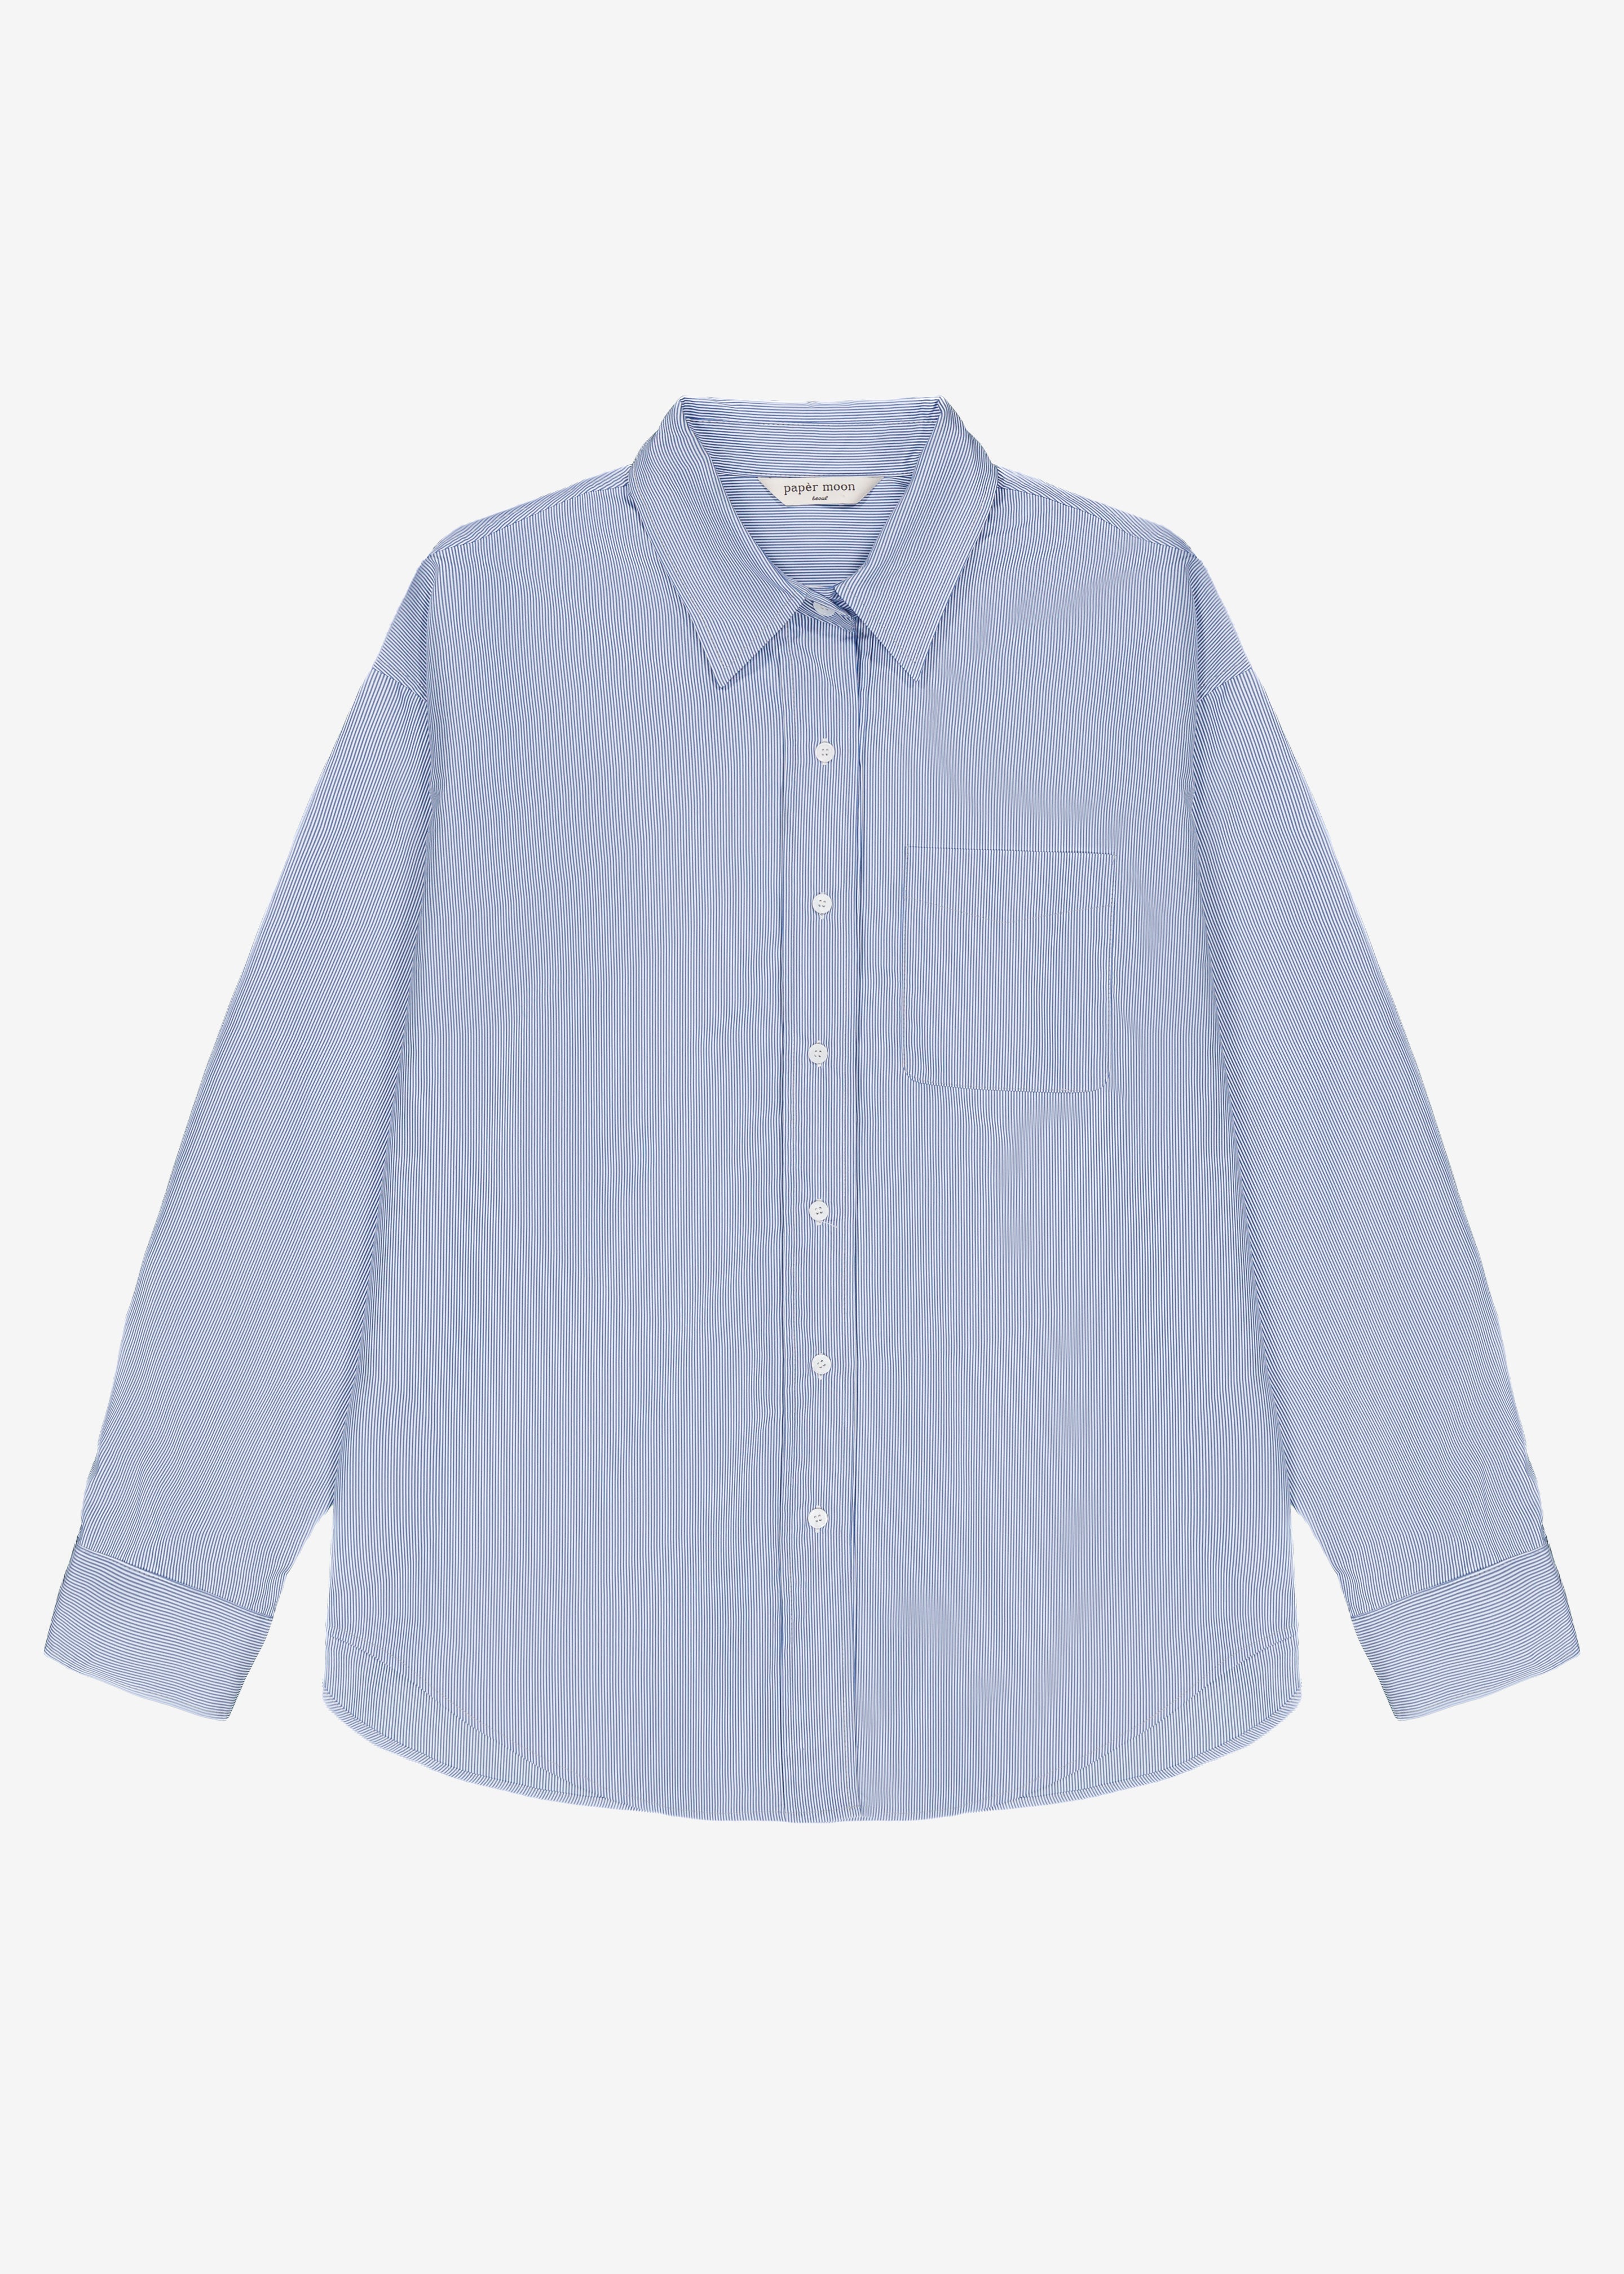 Addie Button Down Shirt - Blue Stripe - 7